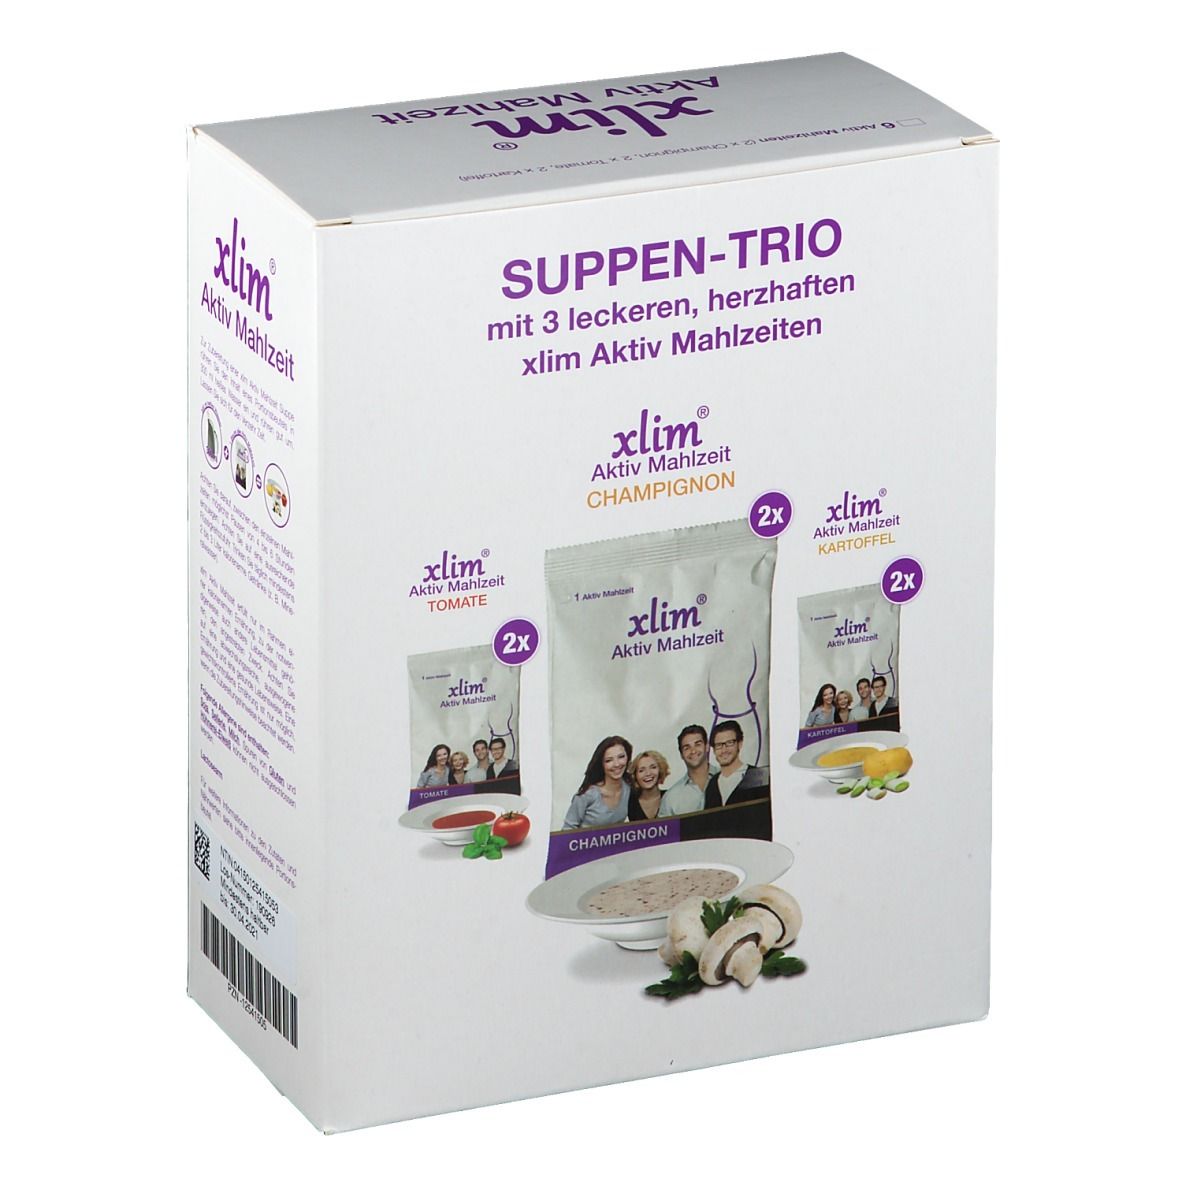 xlim® Aktiv Mahlzeit Suppen-Trio